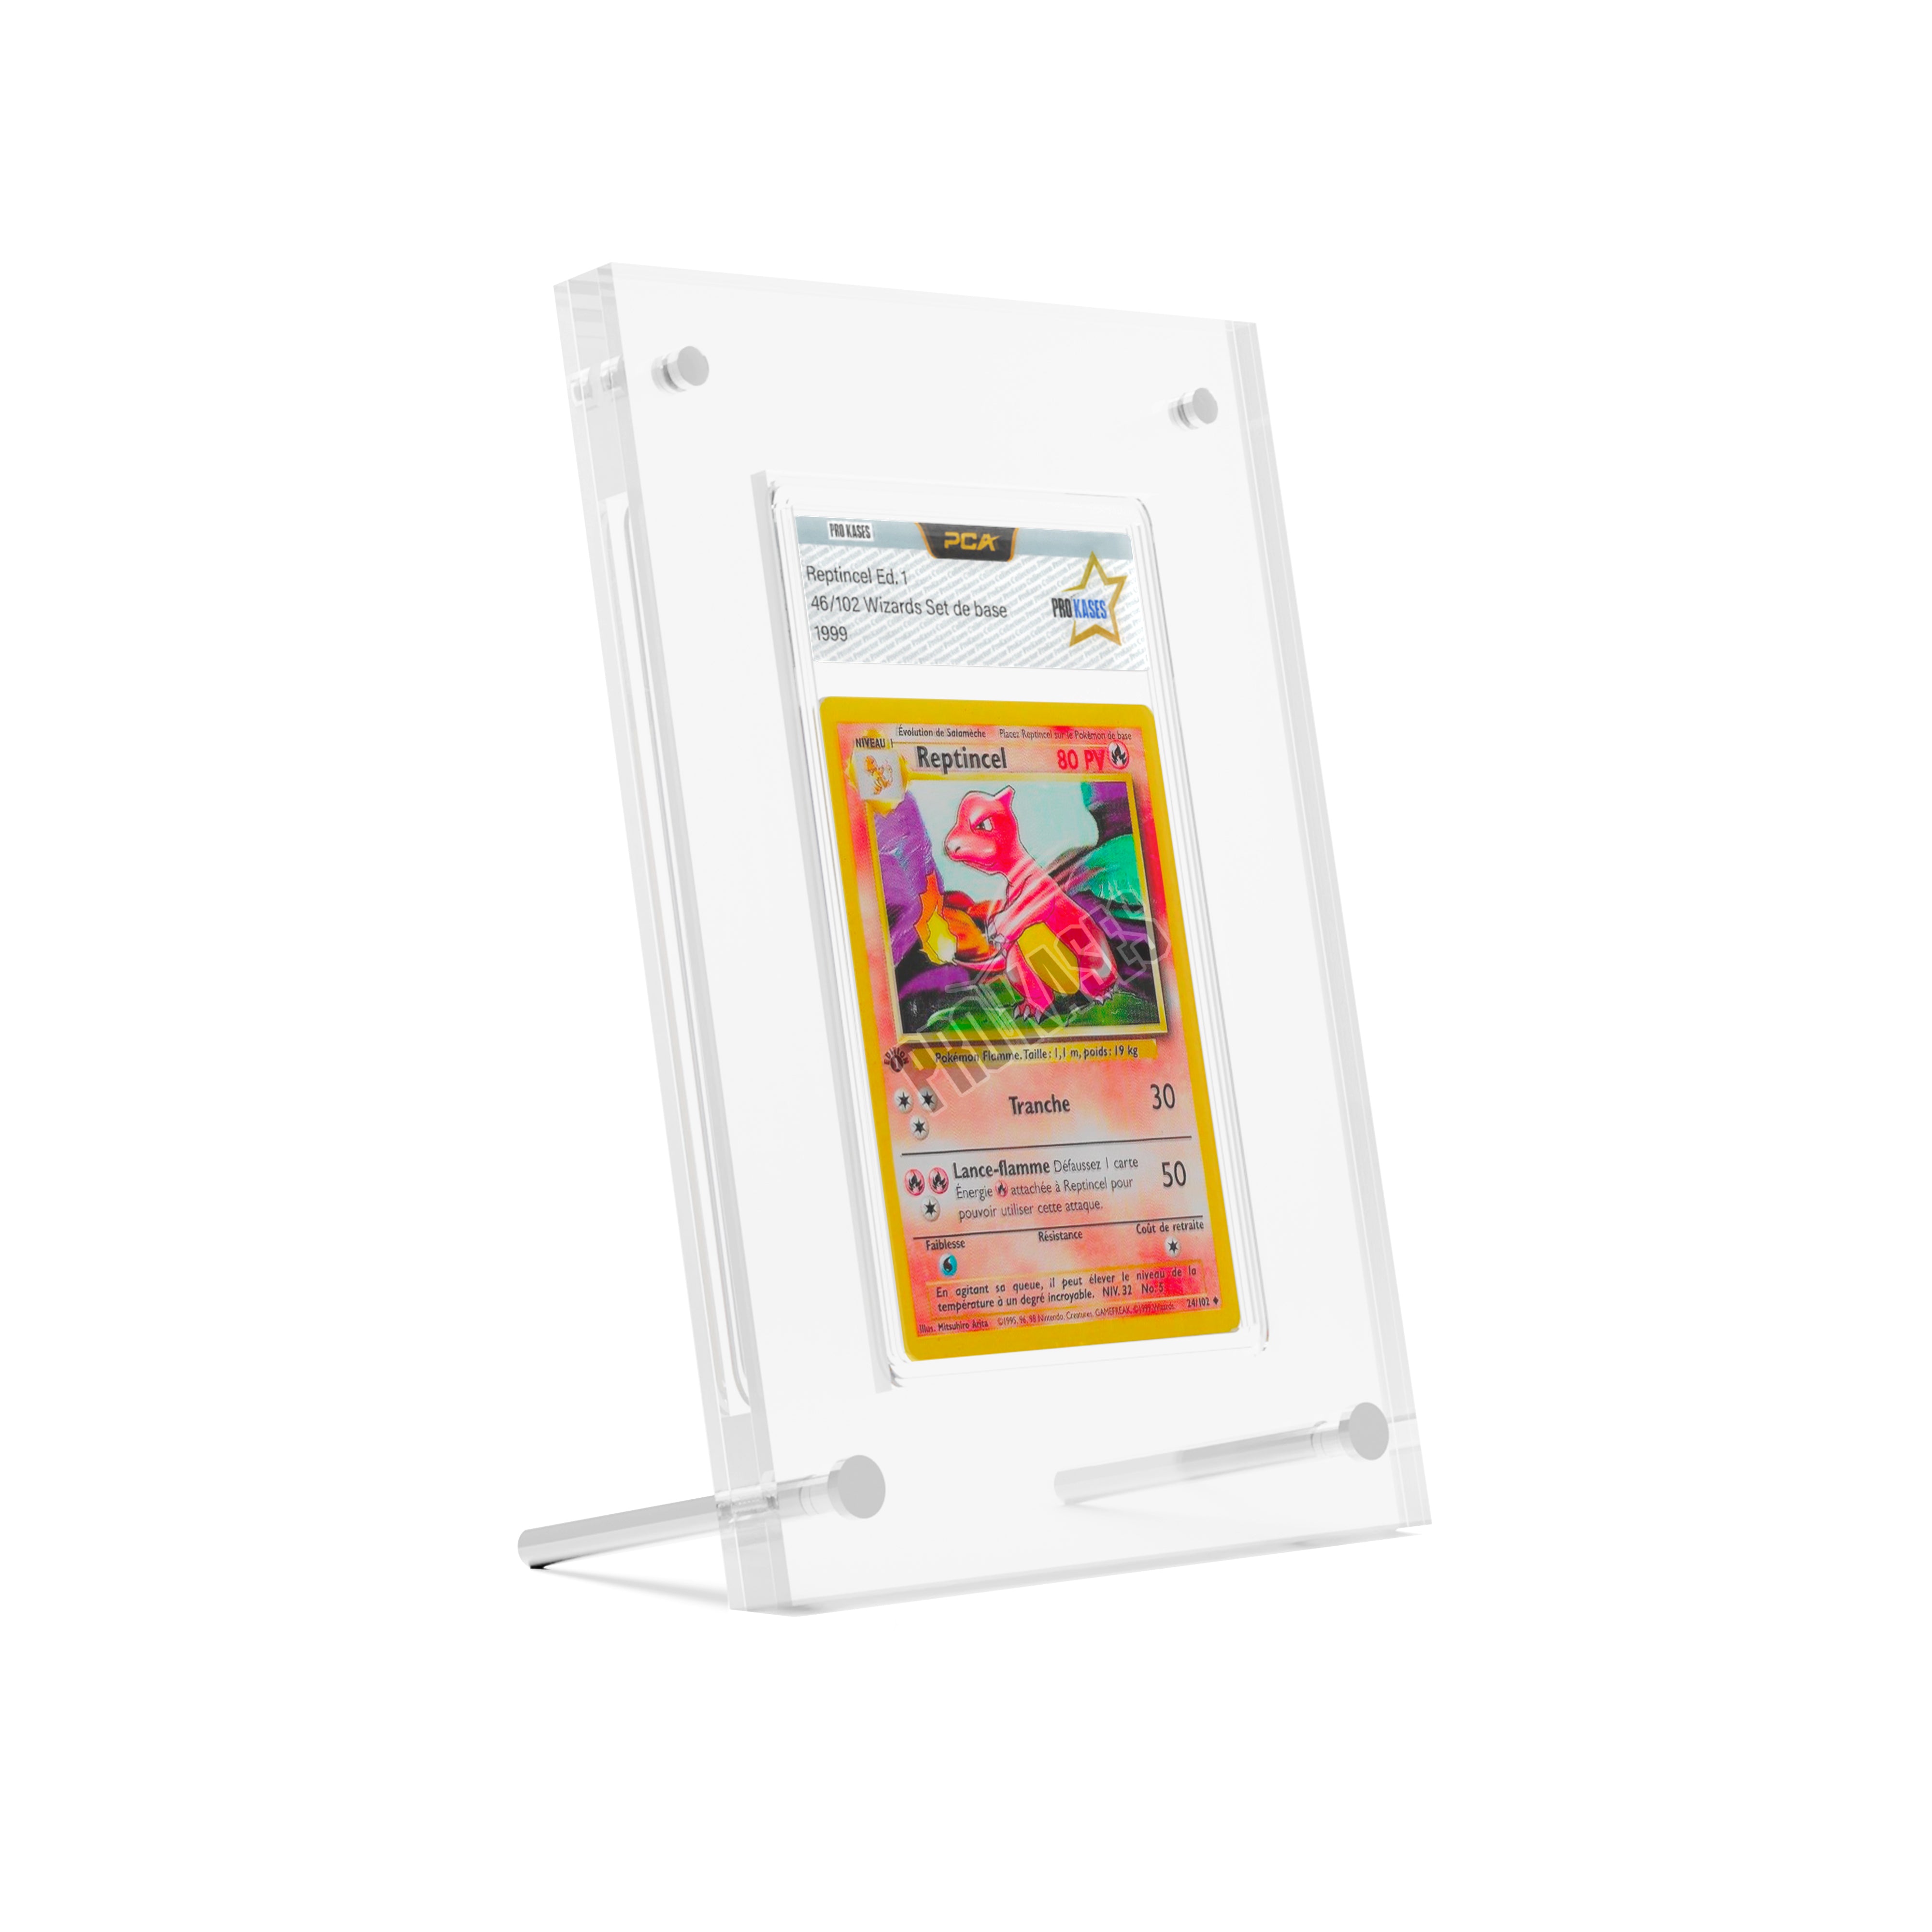 Cadre / boite en acrylique / plexiglass de protection pour cartes Pokemon  certifiée PCA